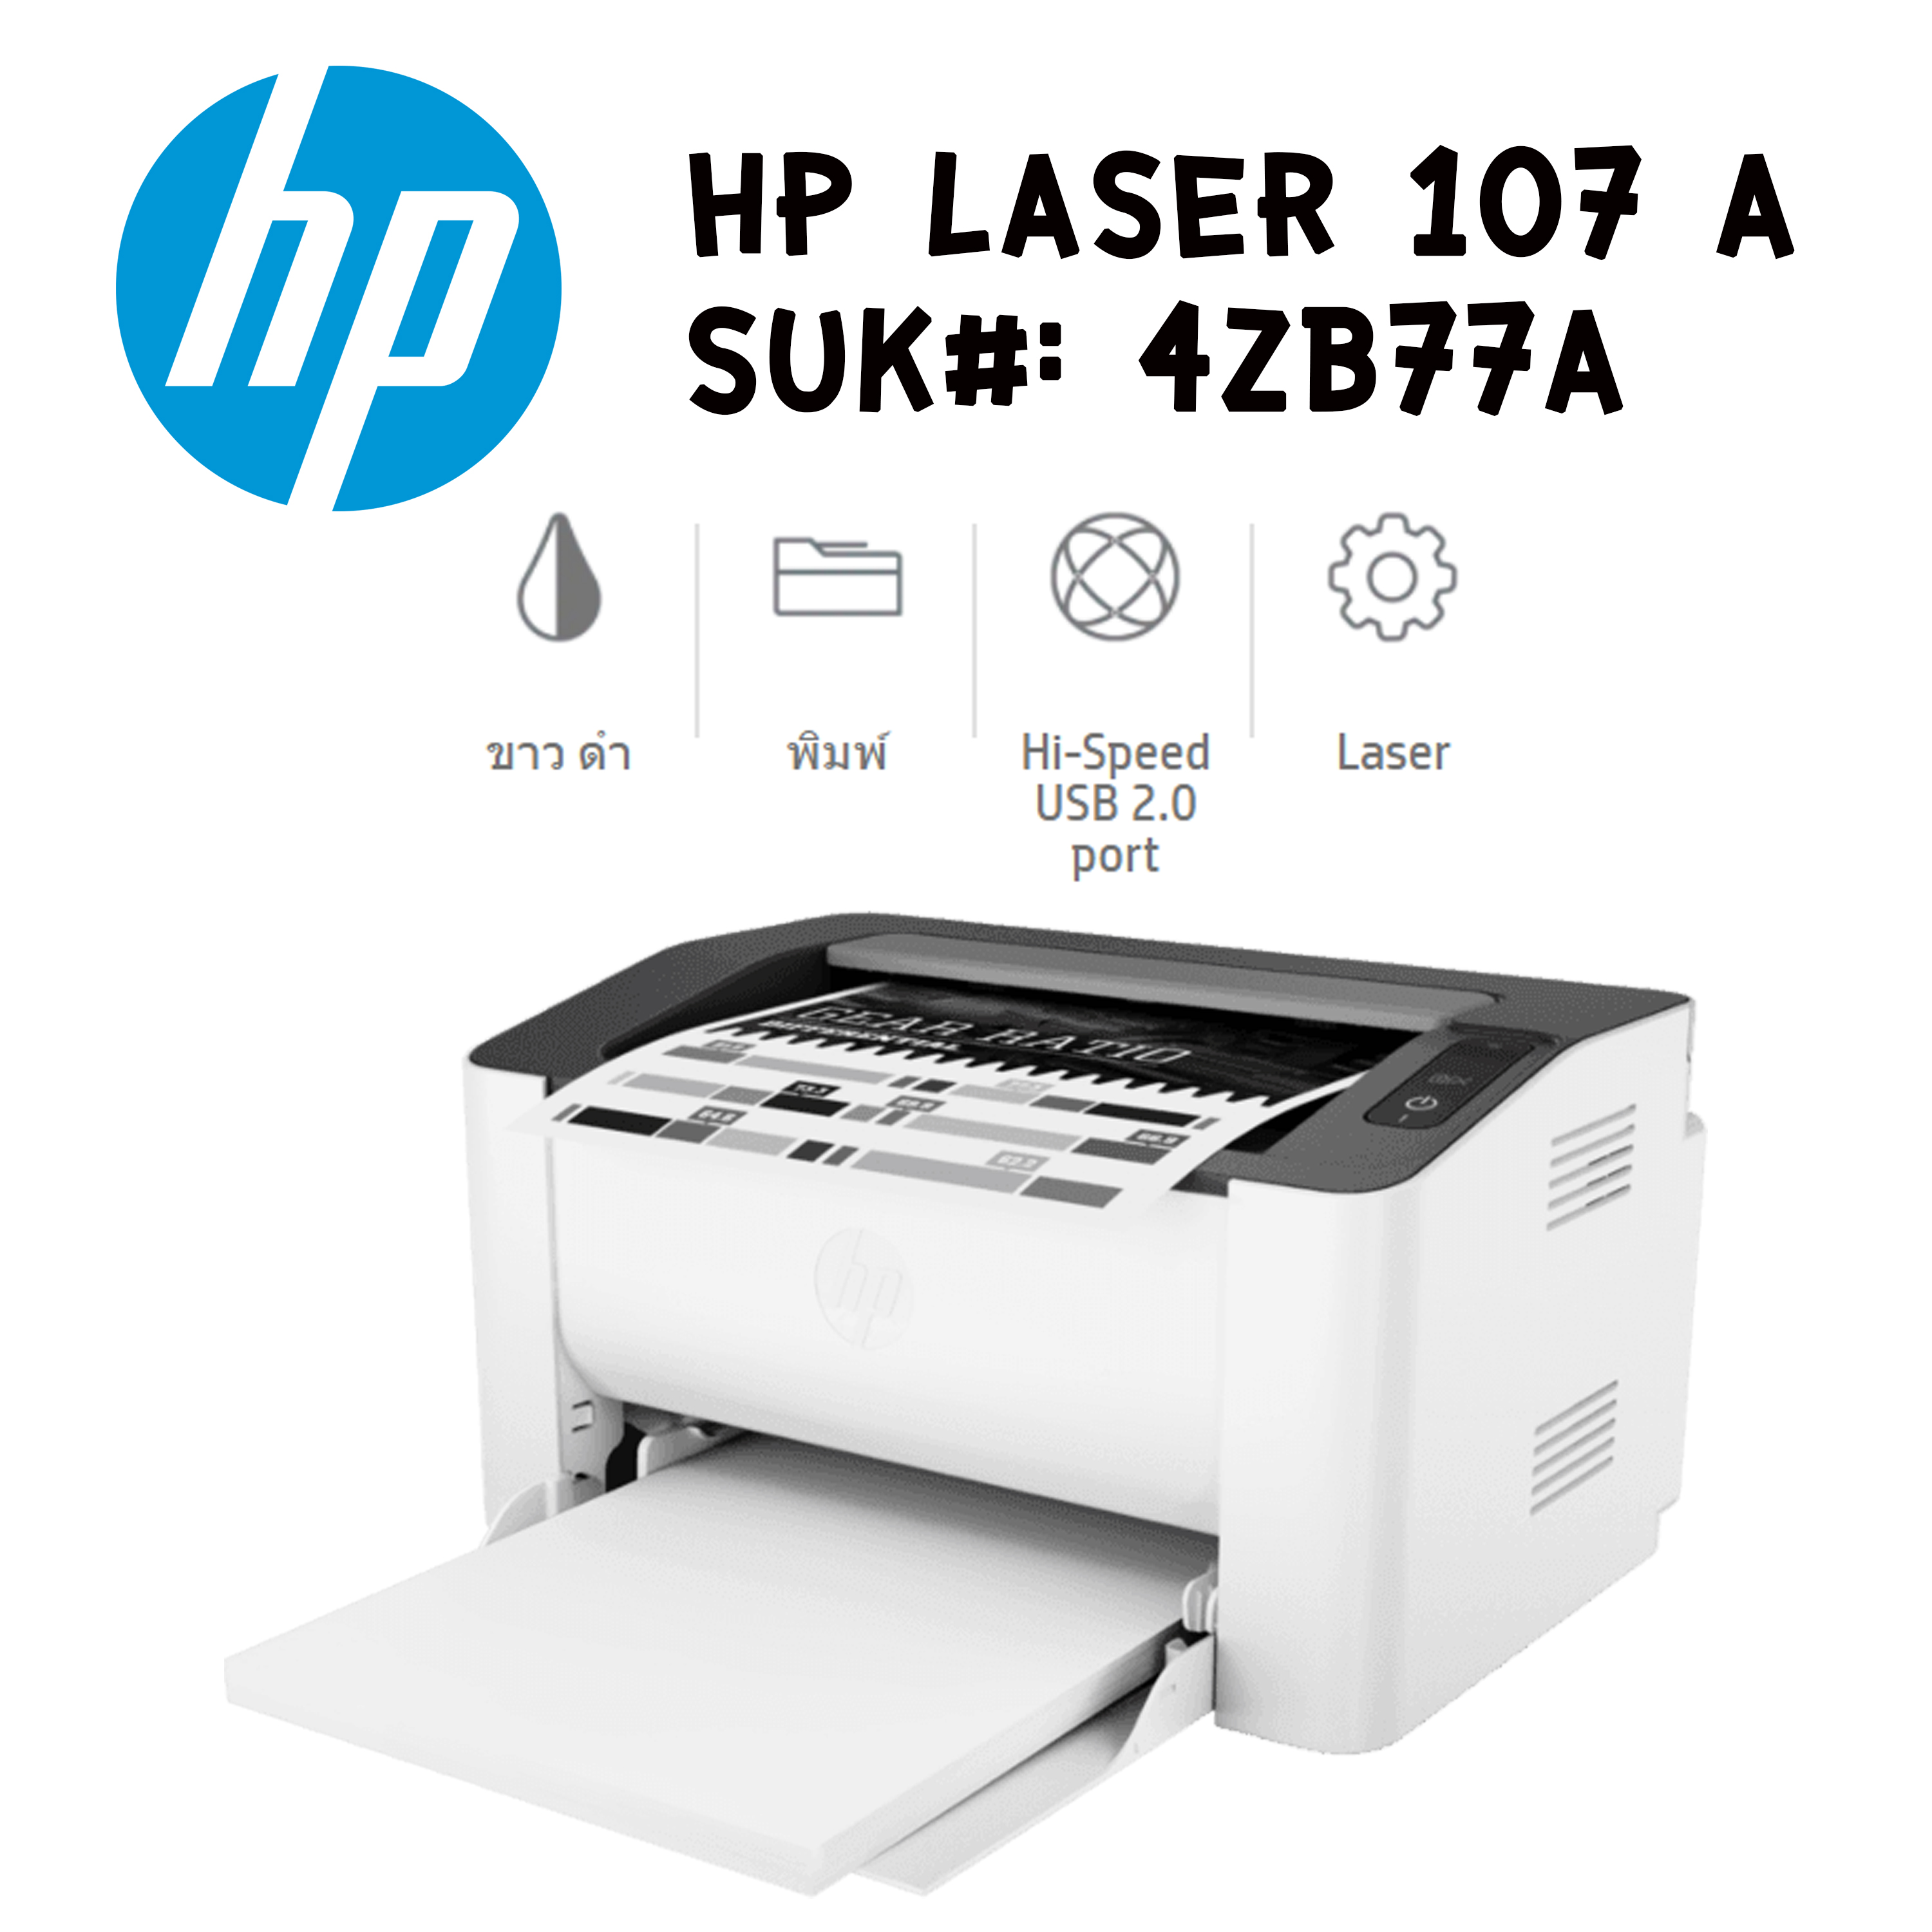 เครื่องพิมพ์เลเซอร์ HP Laser 107a ( ขาว ดำ )